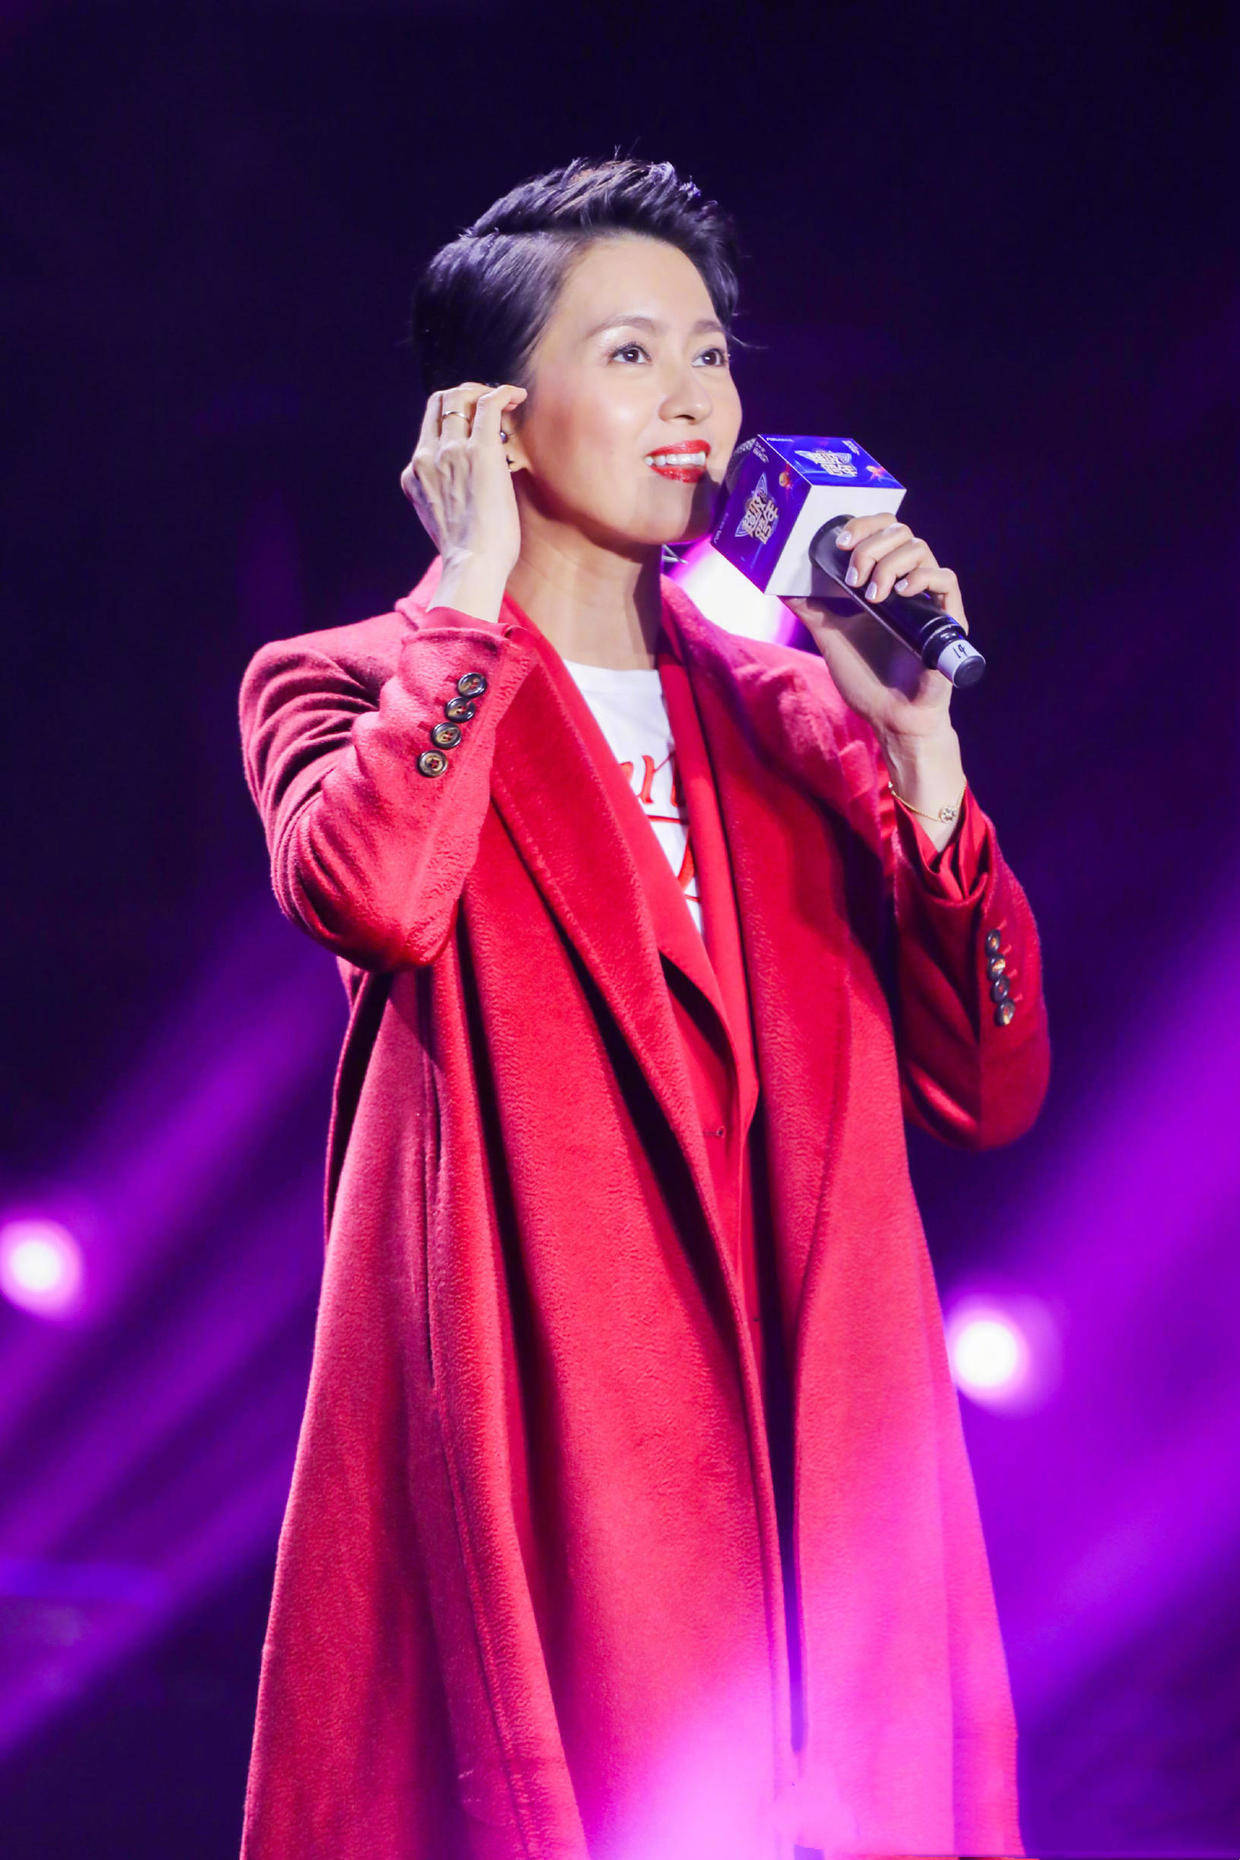 梁咏琪高颜值任性,红色大衣配大背头发型出演,她站在舞台上真美